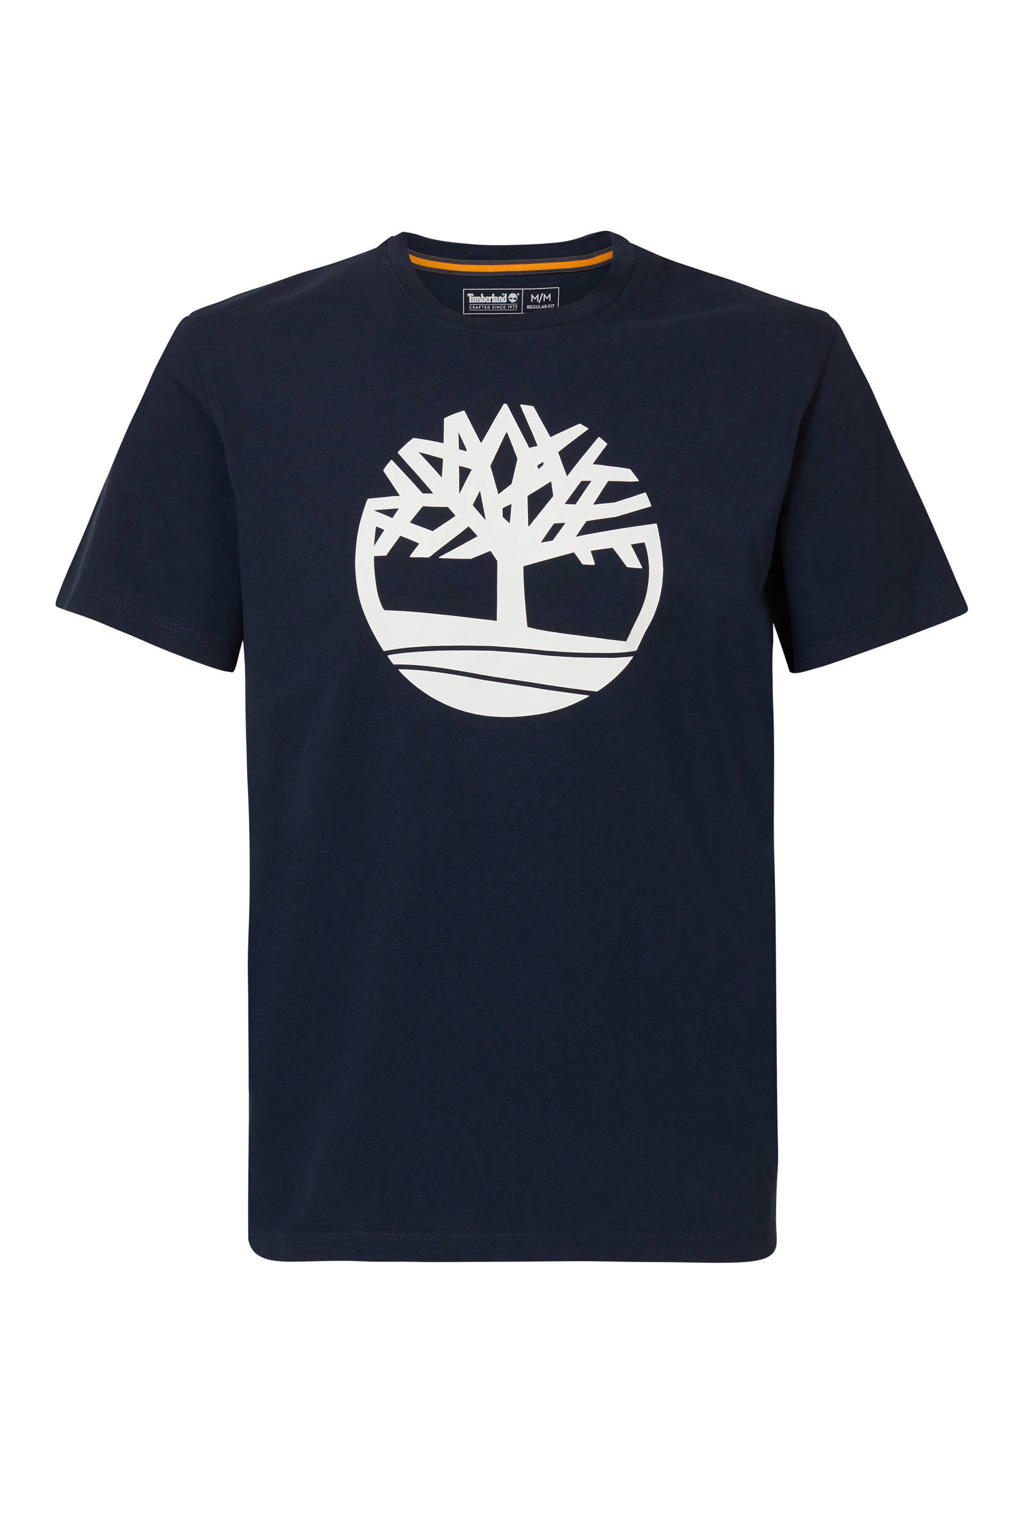 Timberland T-shirt met logo donkerblauw